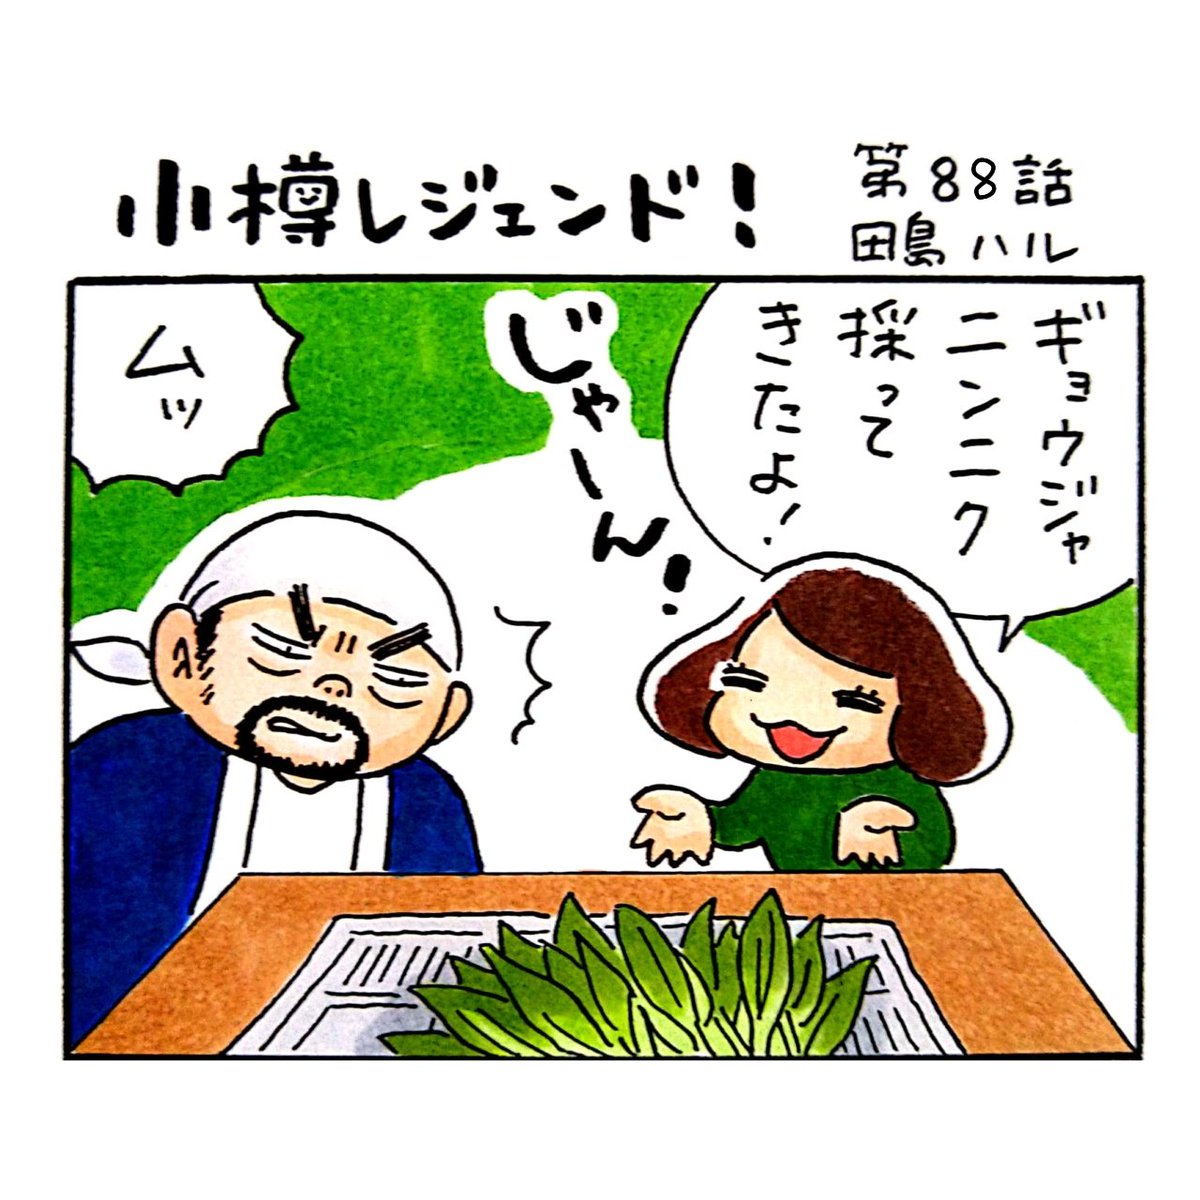 小樽のフリーペーパー「小樽チャンネルmagazine」3月号発行されました。漫画 #小樽レジェンド !第88話載ってます。北海道の春を告げる山菜のギョウジャニンニク。そのギョウジャニンニクと似た有毒植物があるのをご存じでしょうか。たるこの父がその見分け方をレクチャーするよ!
#漫画 #小樽 #北海道 